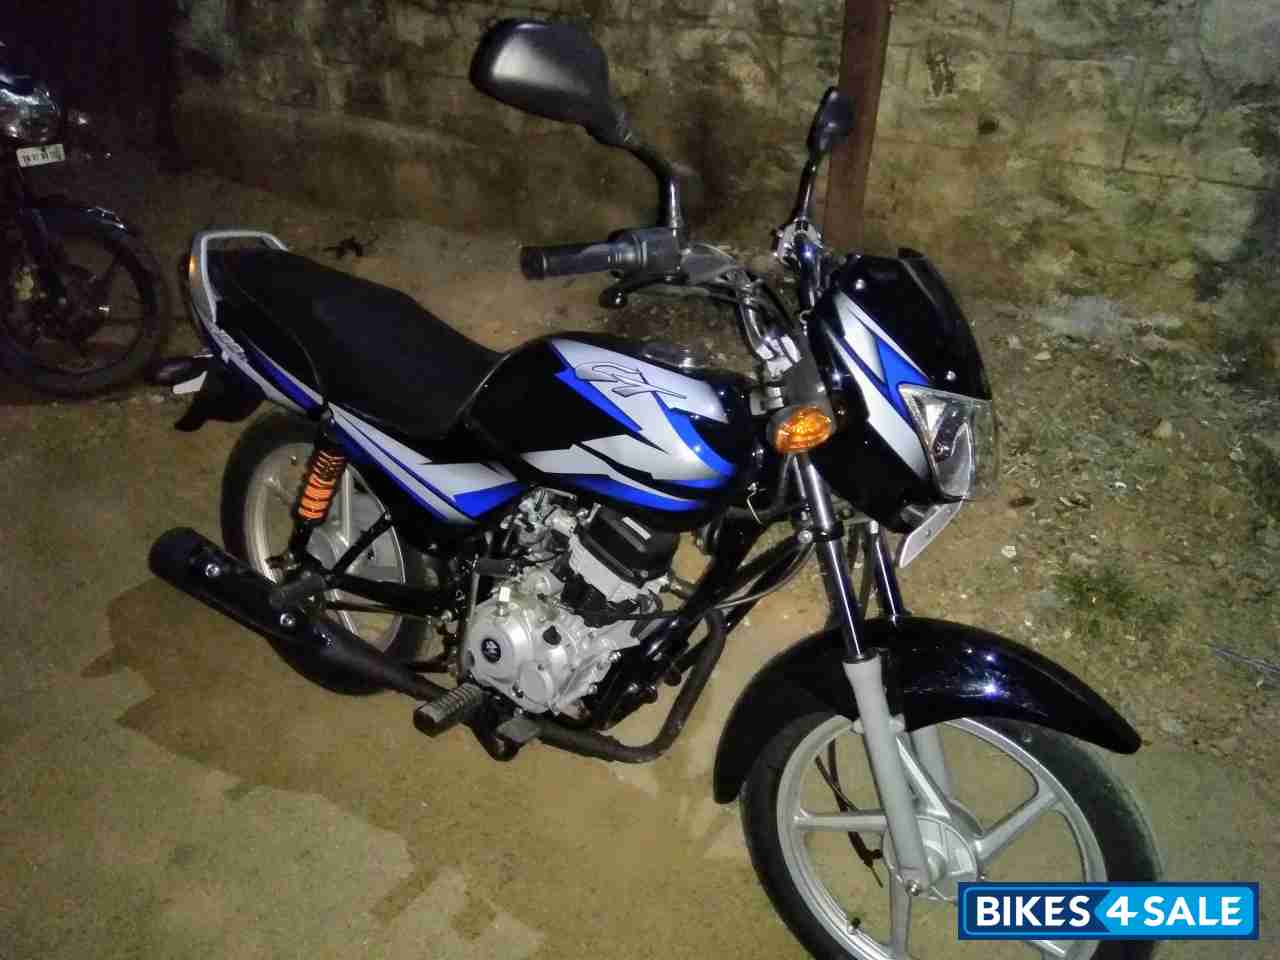 Used 19 Model Bajaj Ct 100 Es For Sale In Coimbatore Id Bikes4sale